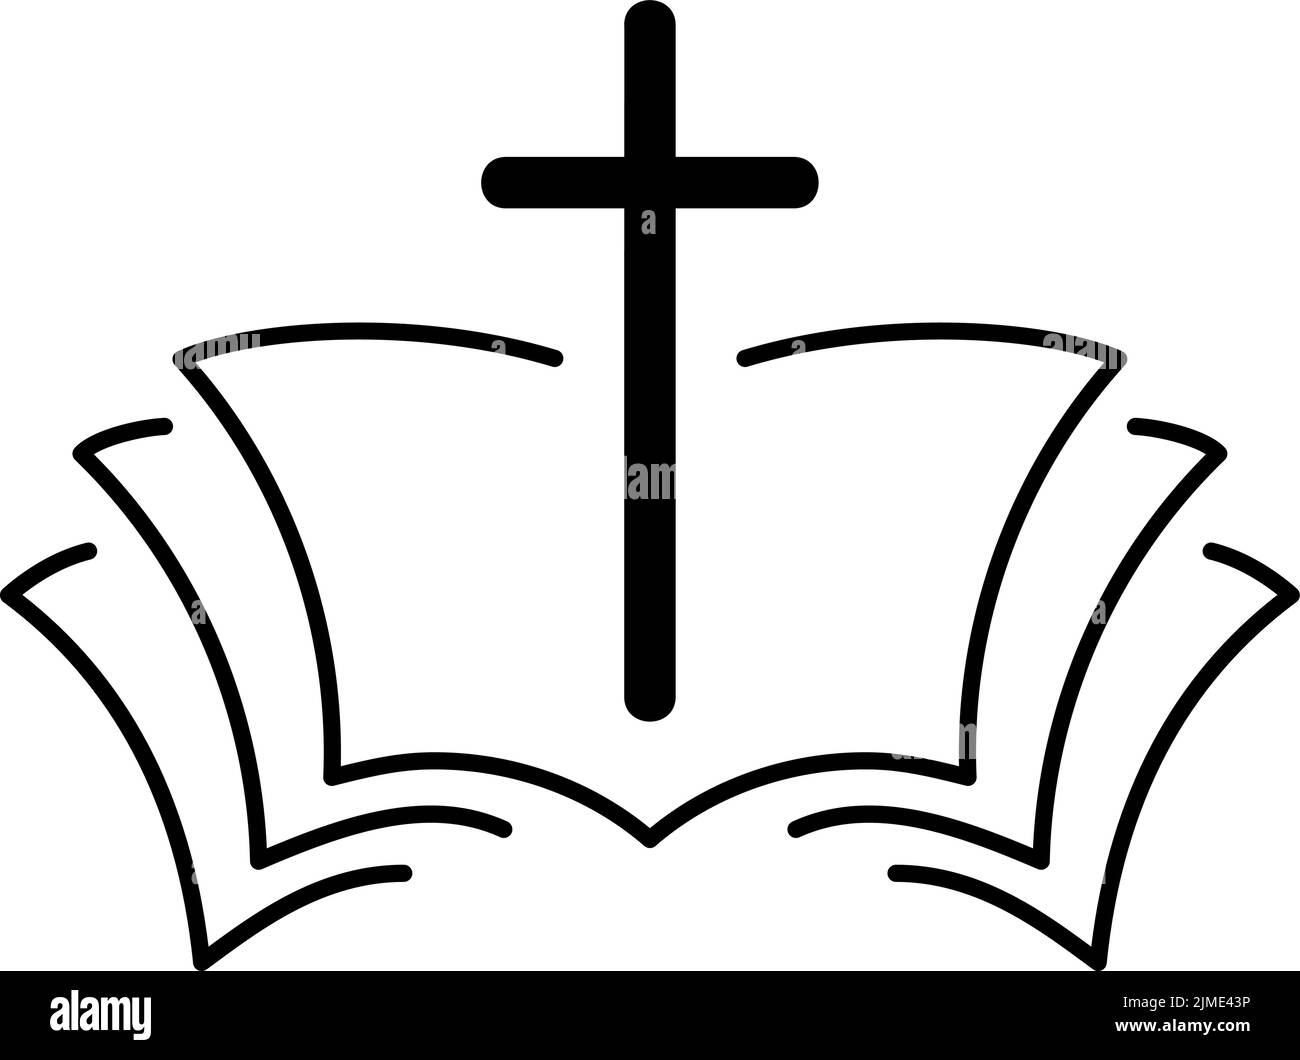 Ilustración vectorial del logotipo o icono cristiano. Emblema con Cruz y Santa Biblia. Comunidad religiosa. Elemento de diseño para cartel, insignia, signo Ilustración del Vector